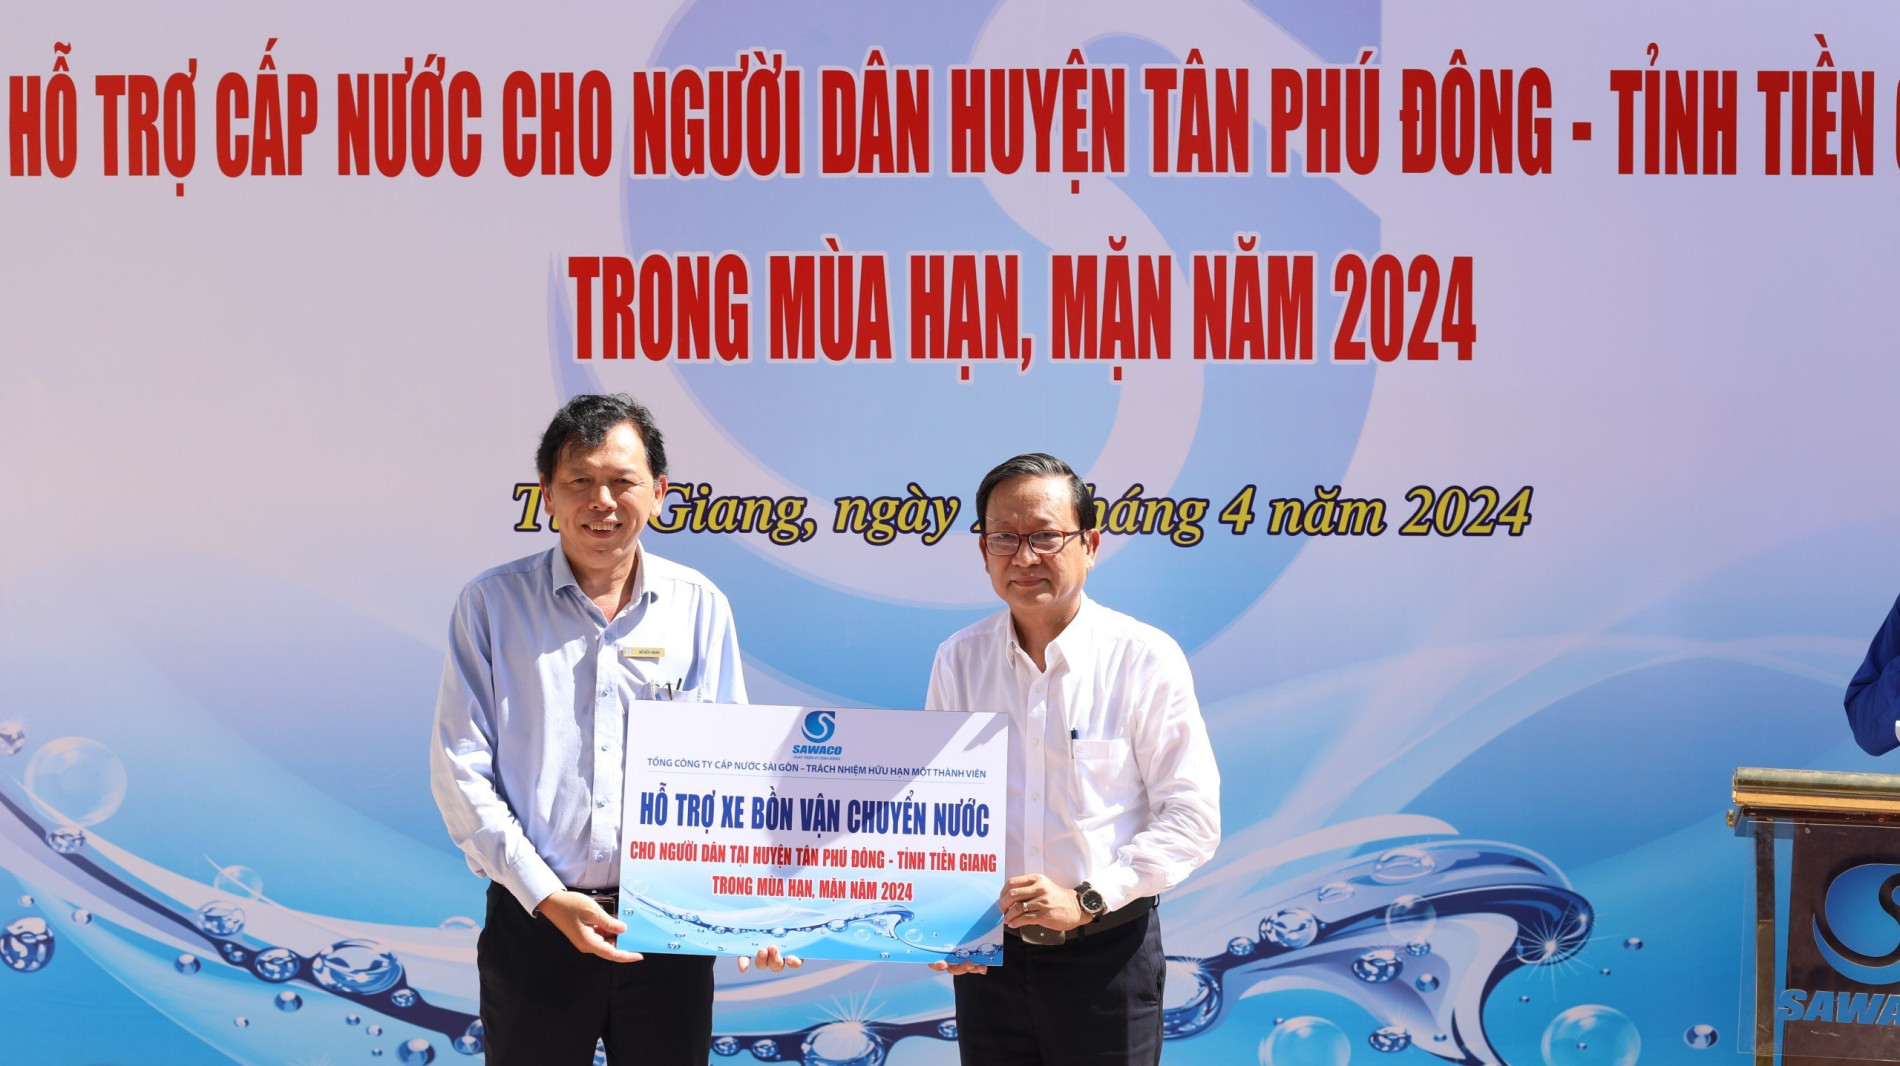 Sawaco hỗ trợ nước sạch cho bà con vùng hạn, mặn tại huyện Tân Phú Đông, tỉnh Tiền Giang.